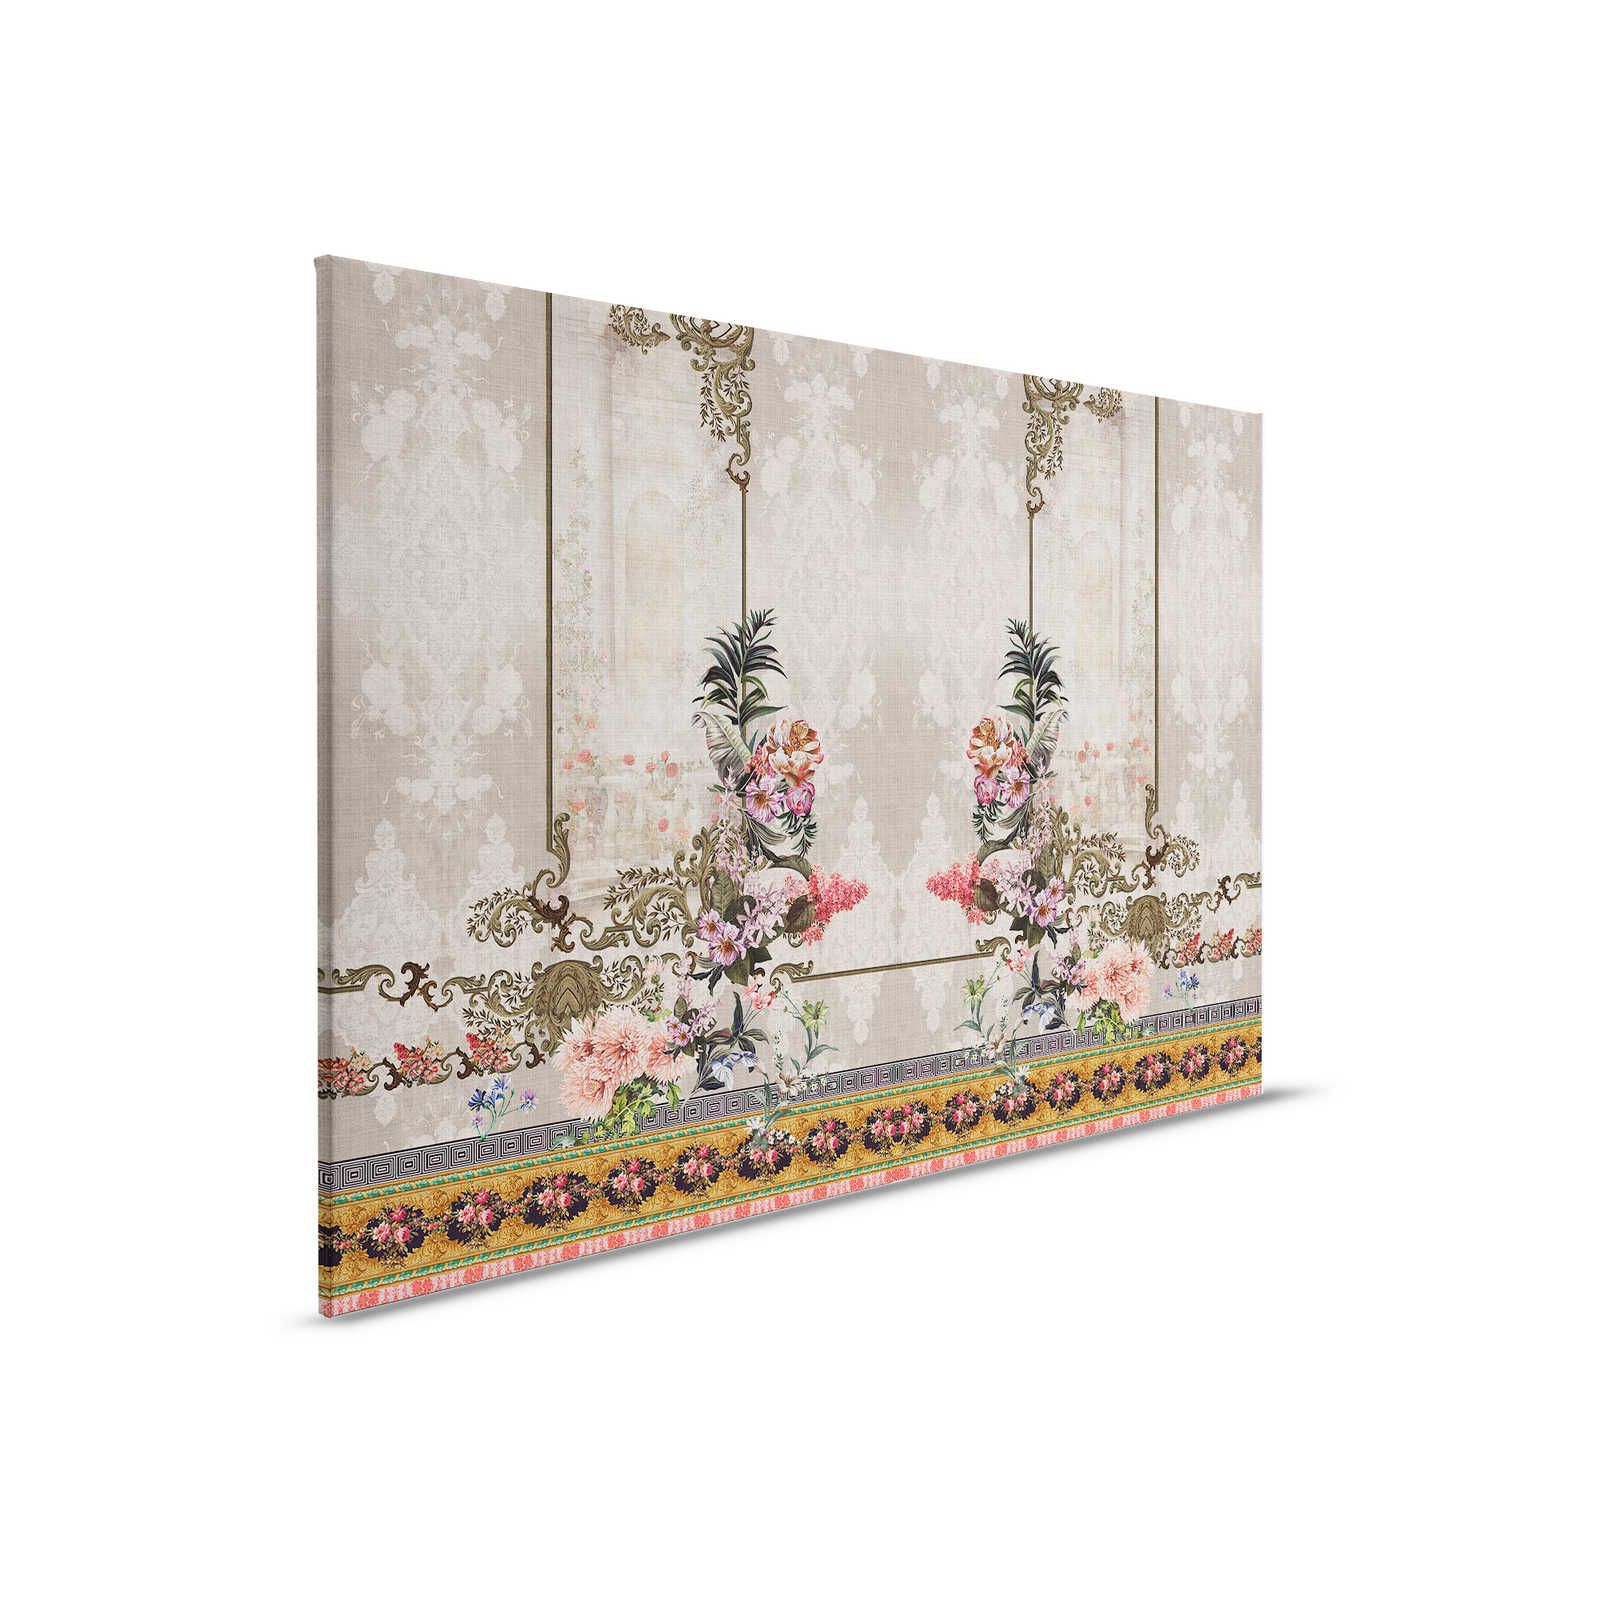 Oriental Garden 1 - Canvas schilderij Wanddecoratie Bloemrijk & randen - 0,90 m x 0,60 m
